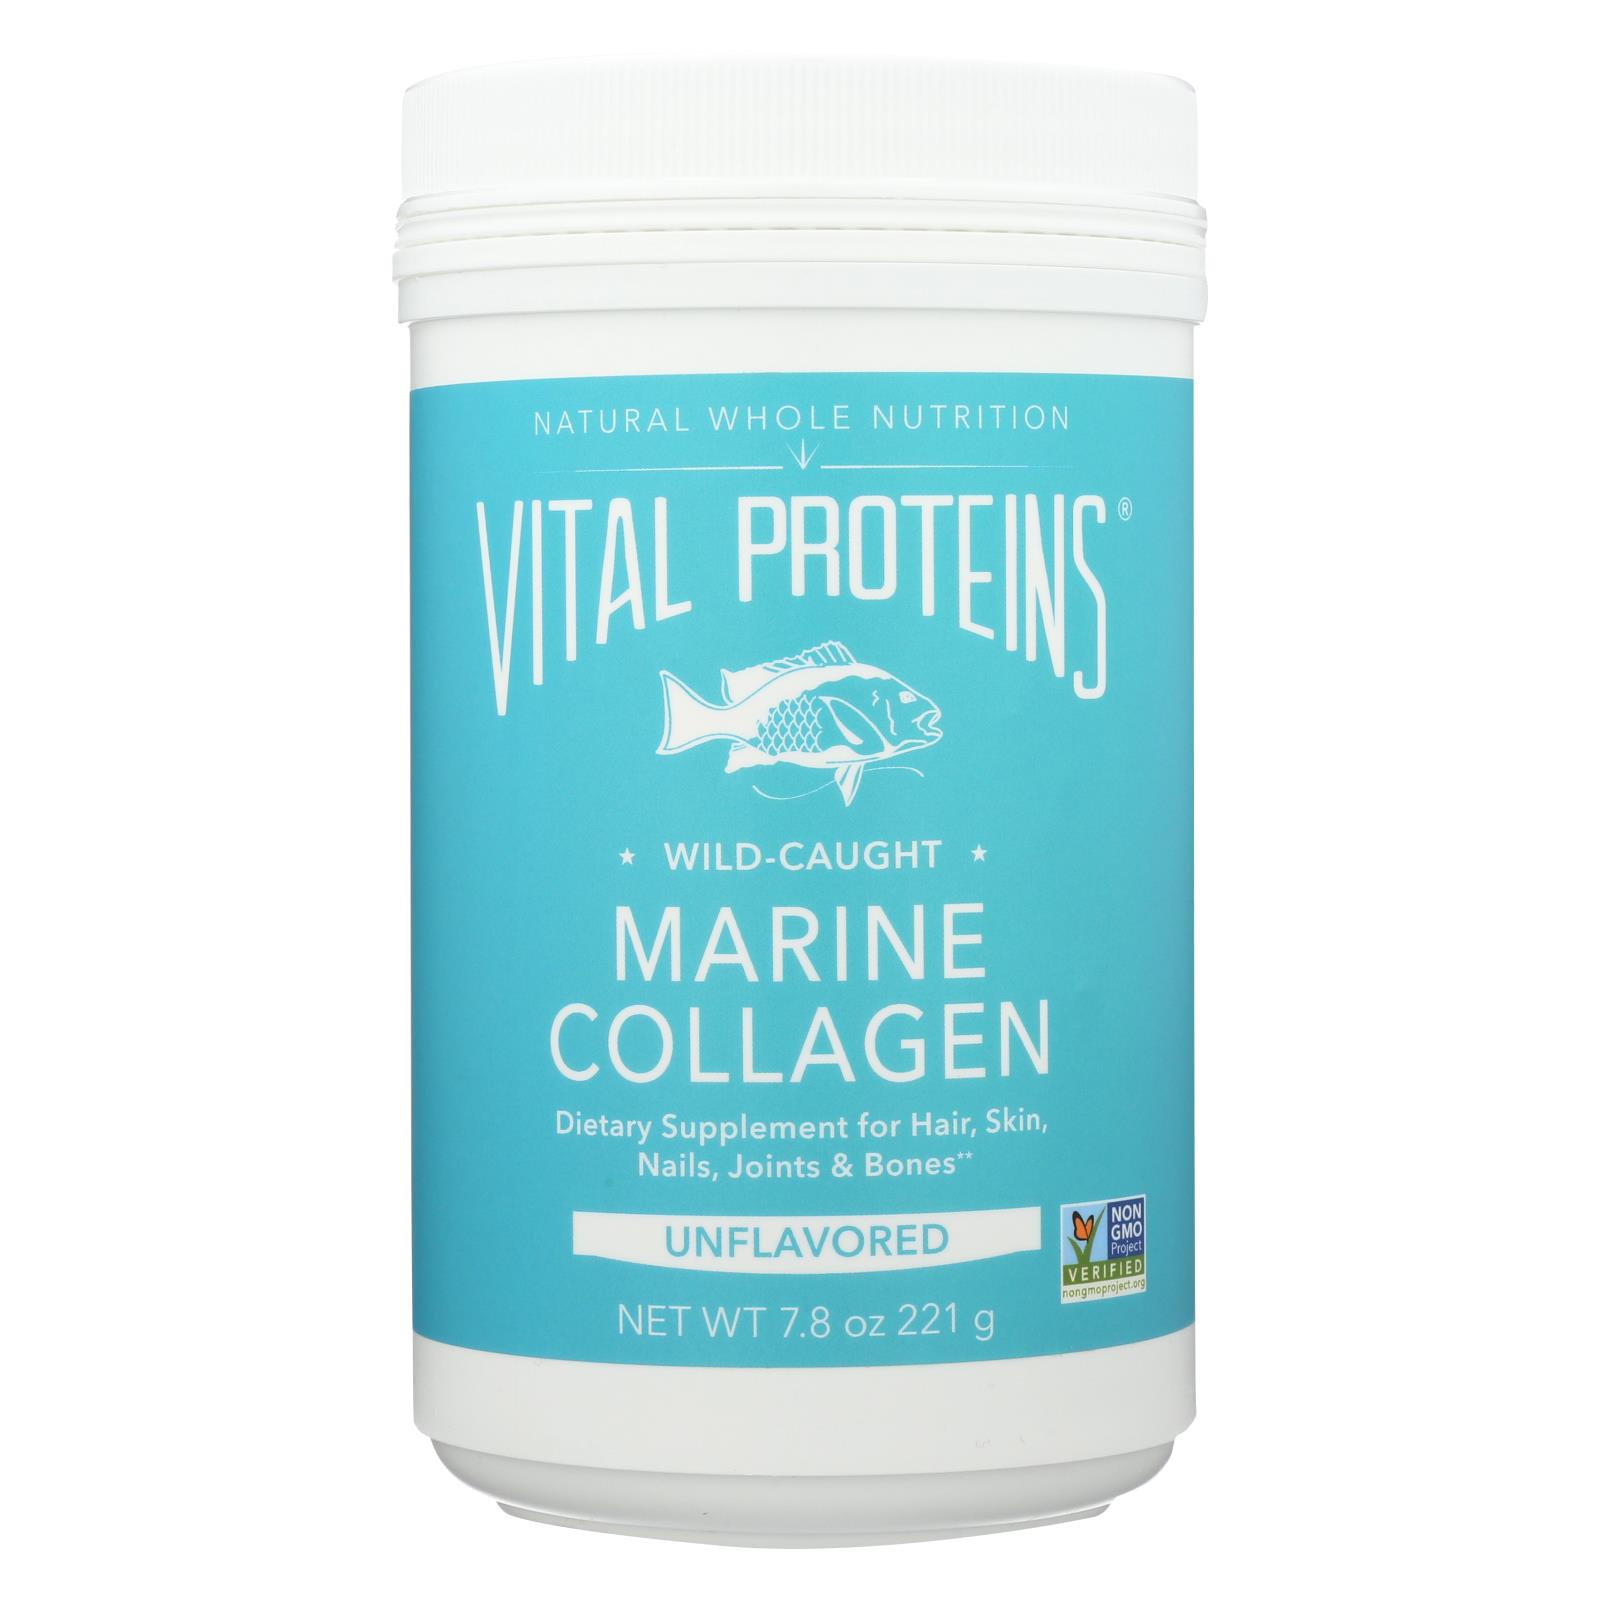 Vital Proteins Unflavored Wild-Caught Marine Collagen - 1 Each - 7.8 OZ